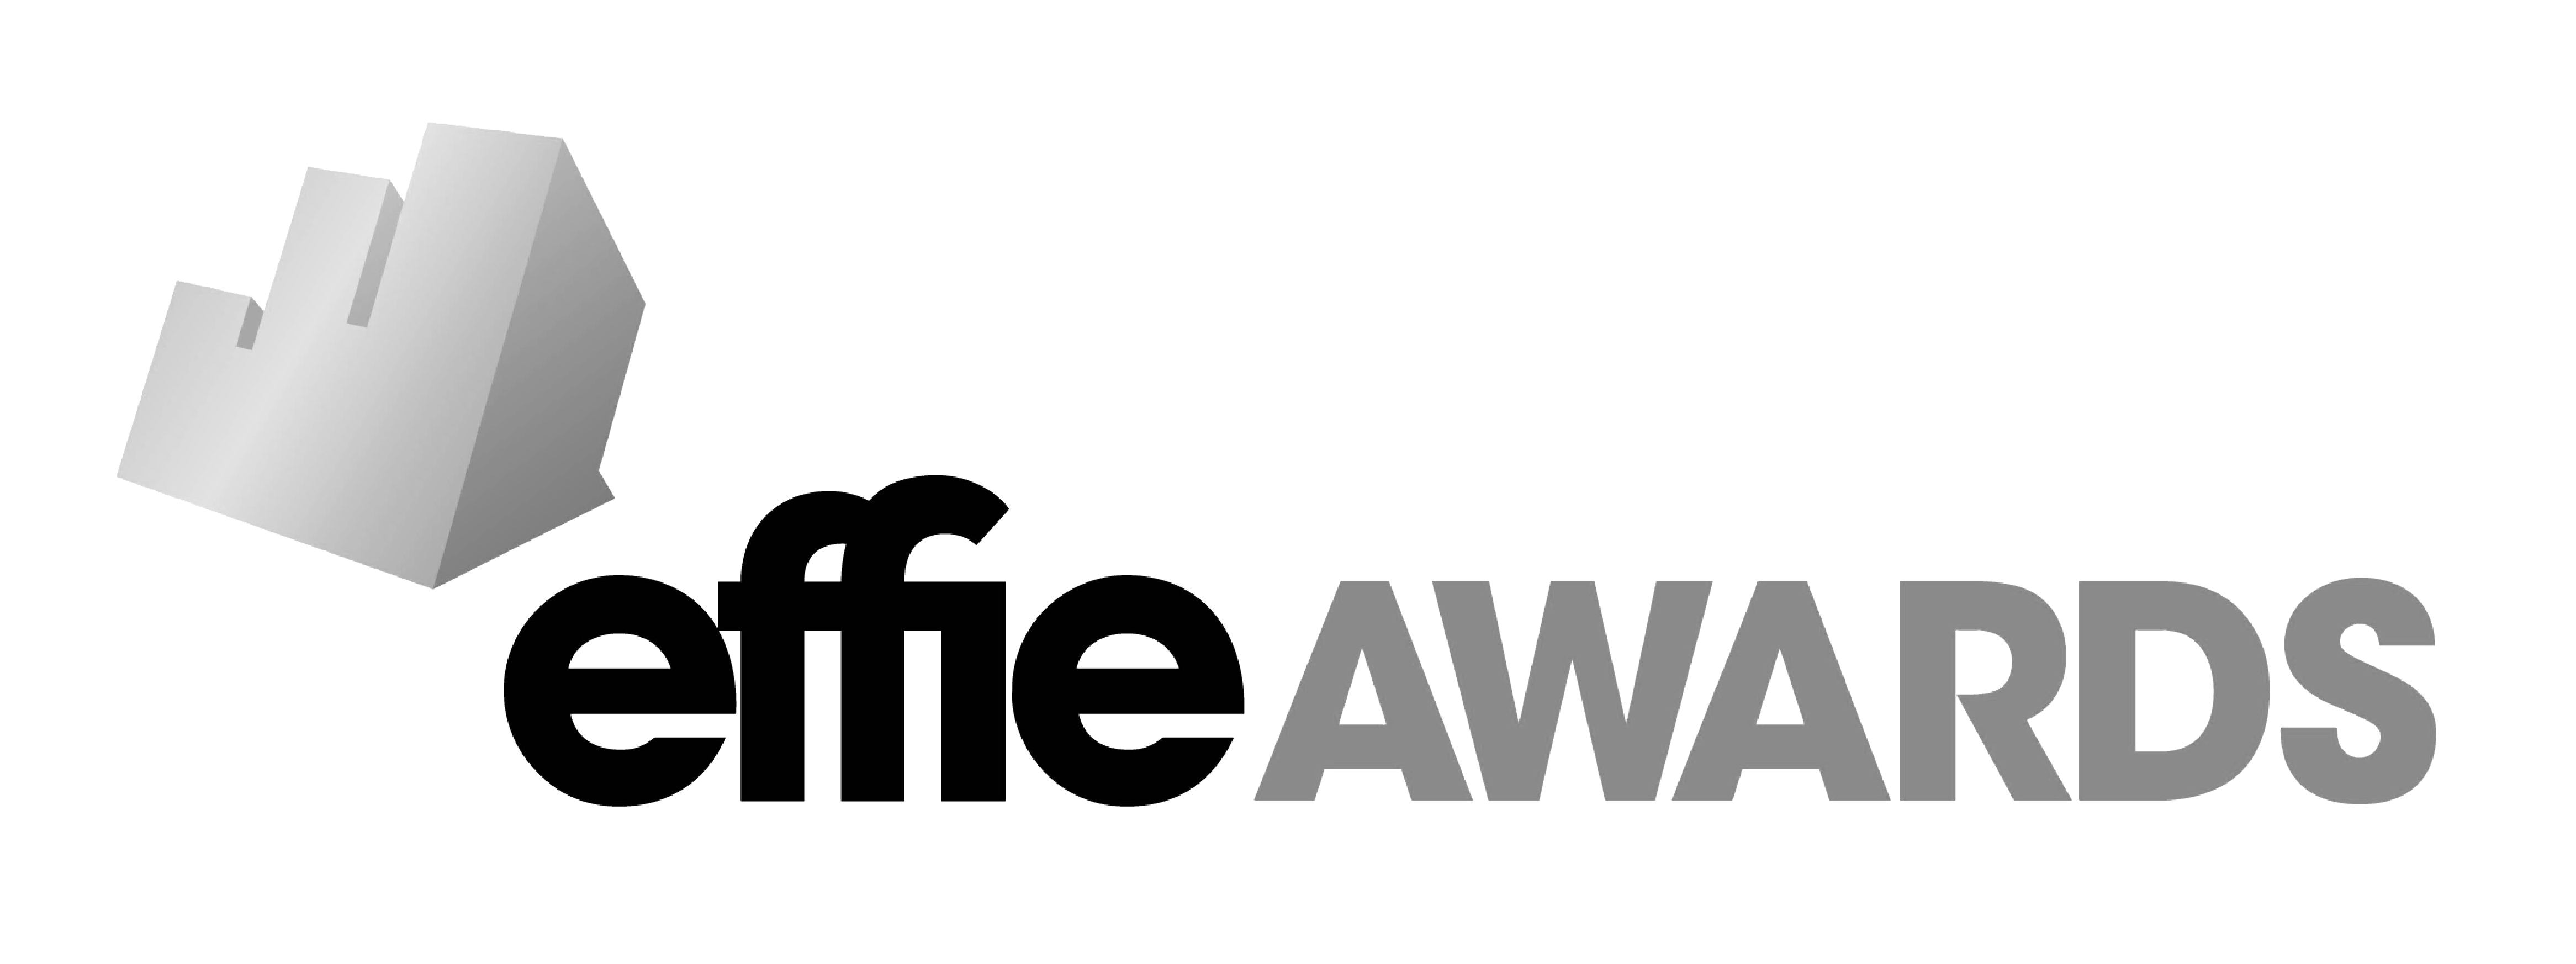 effie awards logo